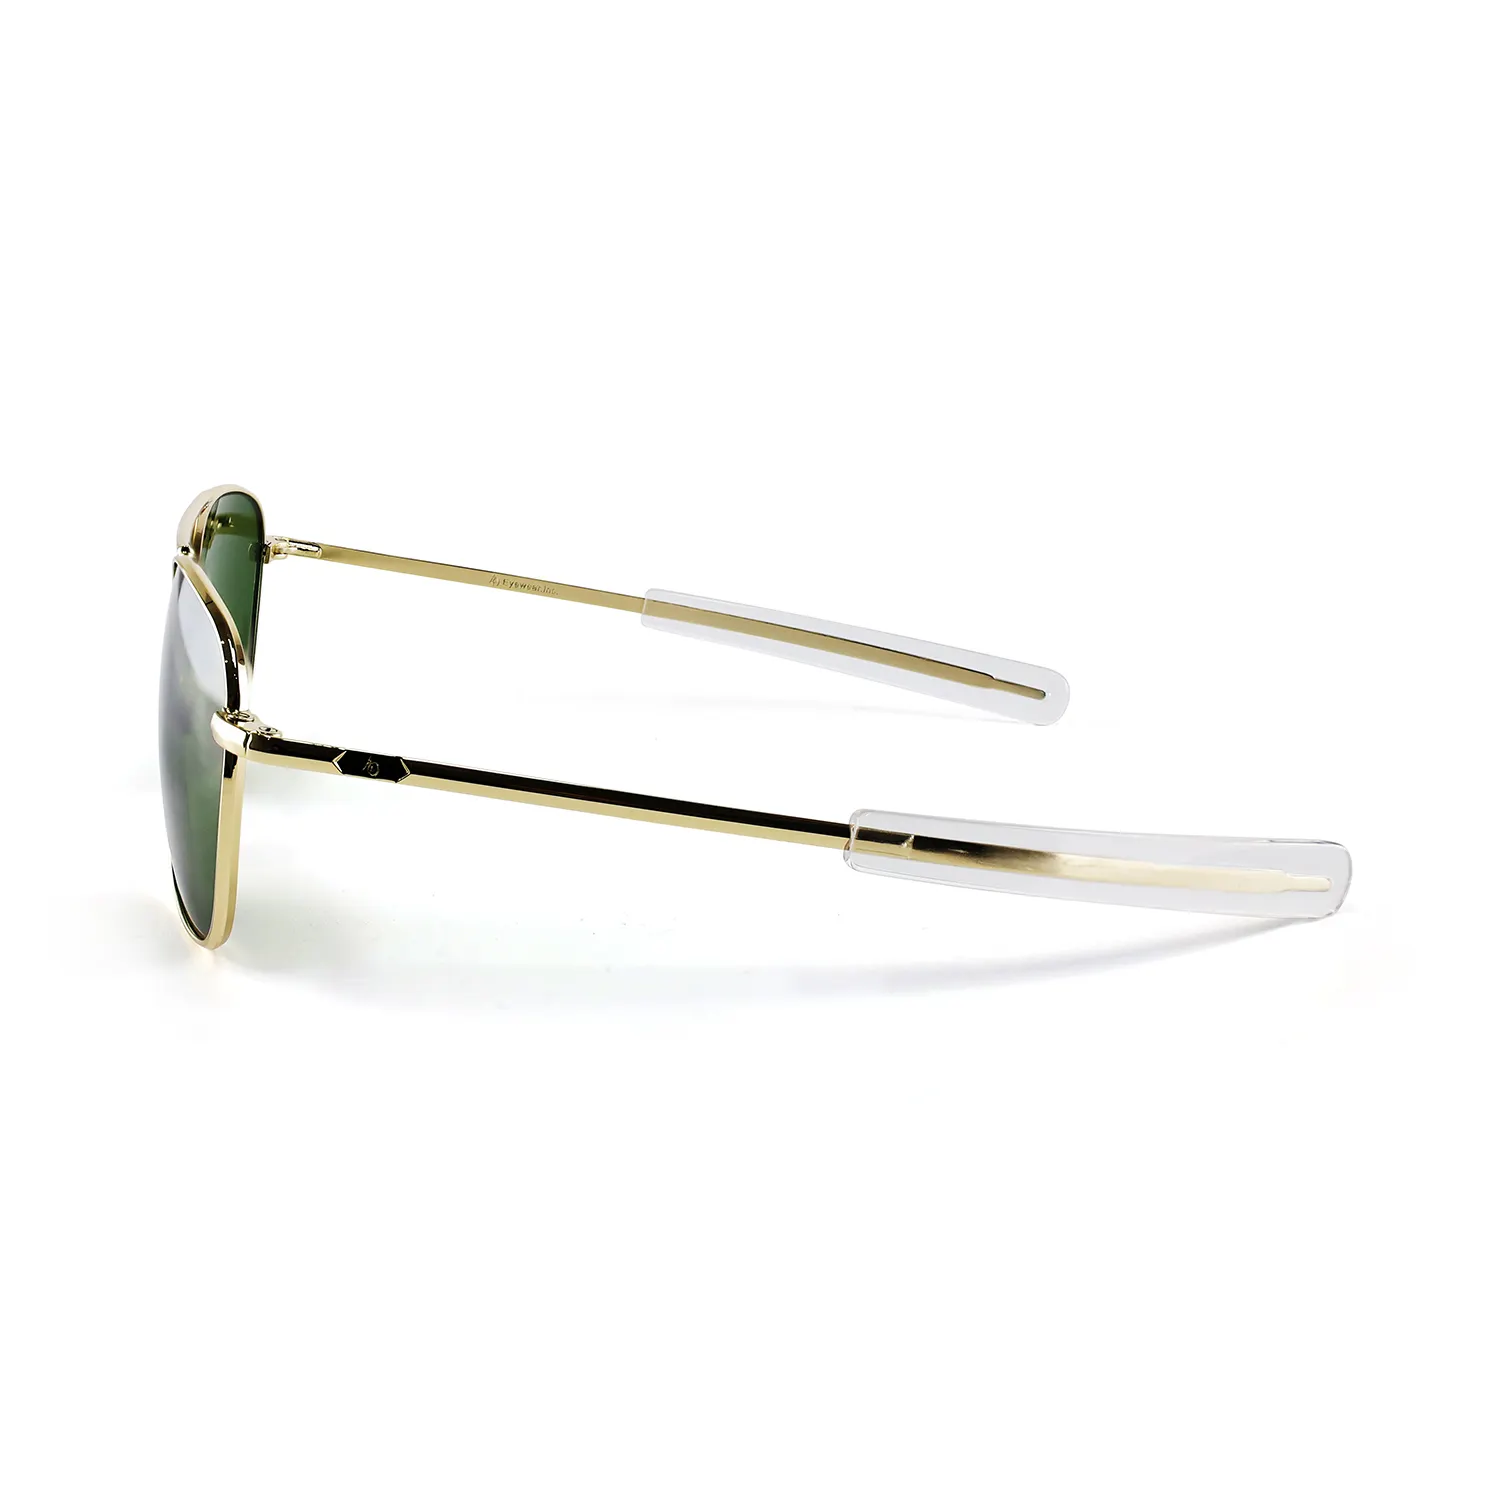 Figroad Shenzhen Kwaliteit Metalen Luxe Custom Retro Zonnebril Handgemaakte Brillen Voor Mannen En Vrouwen Aangepaste Logo